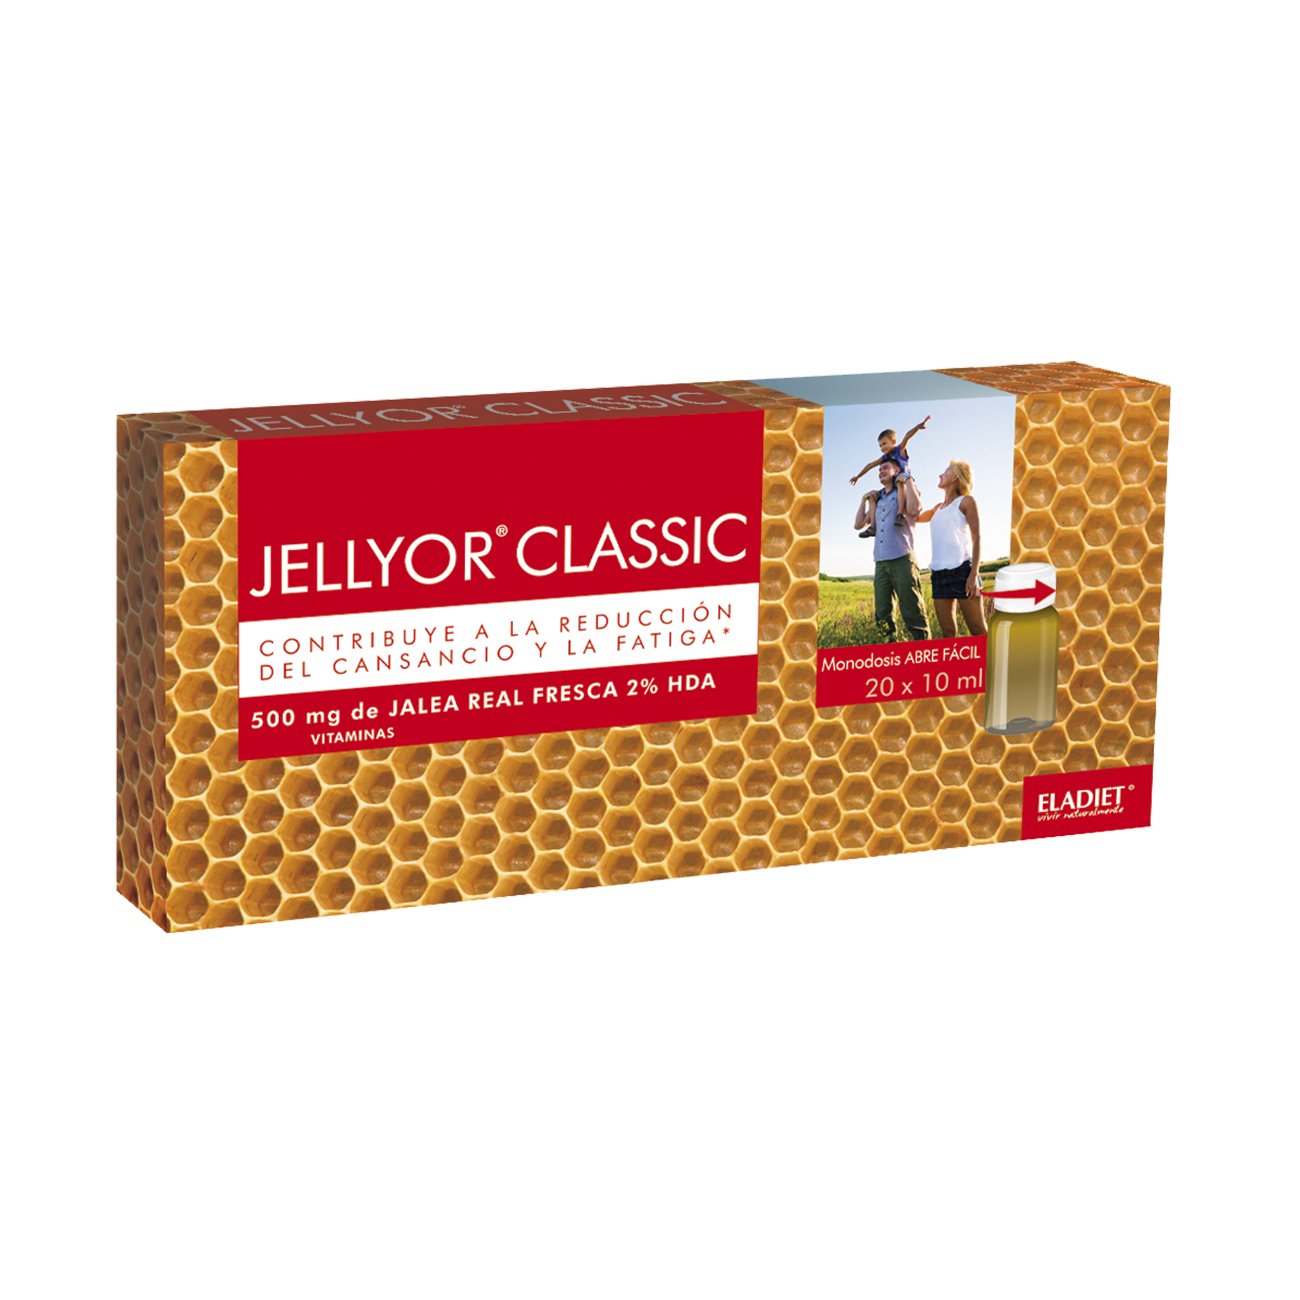 Jellyor Classic